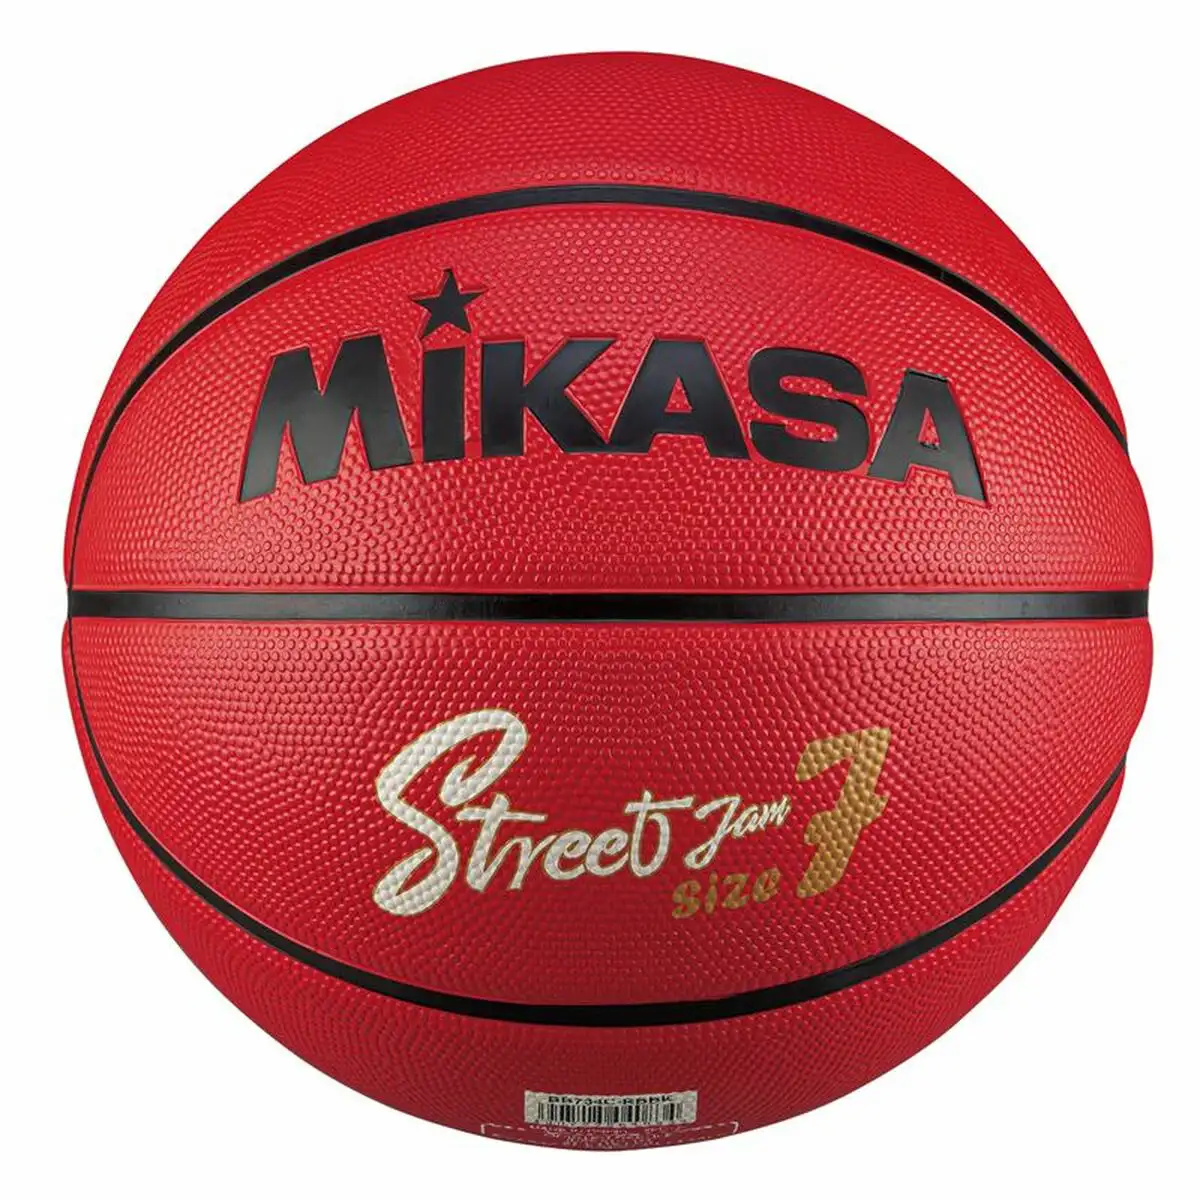 Ballon de basket mikasa bb634c 6 ans_4378. DIAYTAR SENEGAL - Votre Plaisir Shopping à Portée de Clic. Explorez notre boutique en ligne et trouvez des produits qui ajoutent une touche de bonheur à votre vie quotidienne.